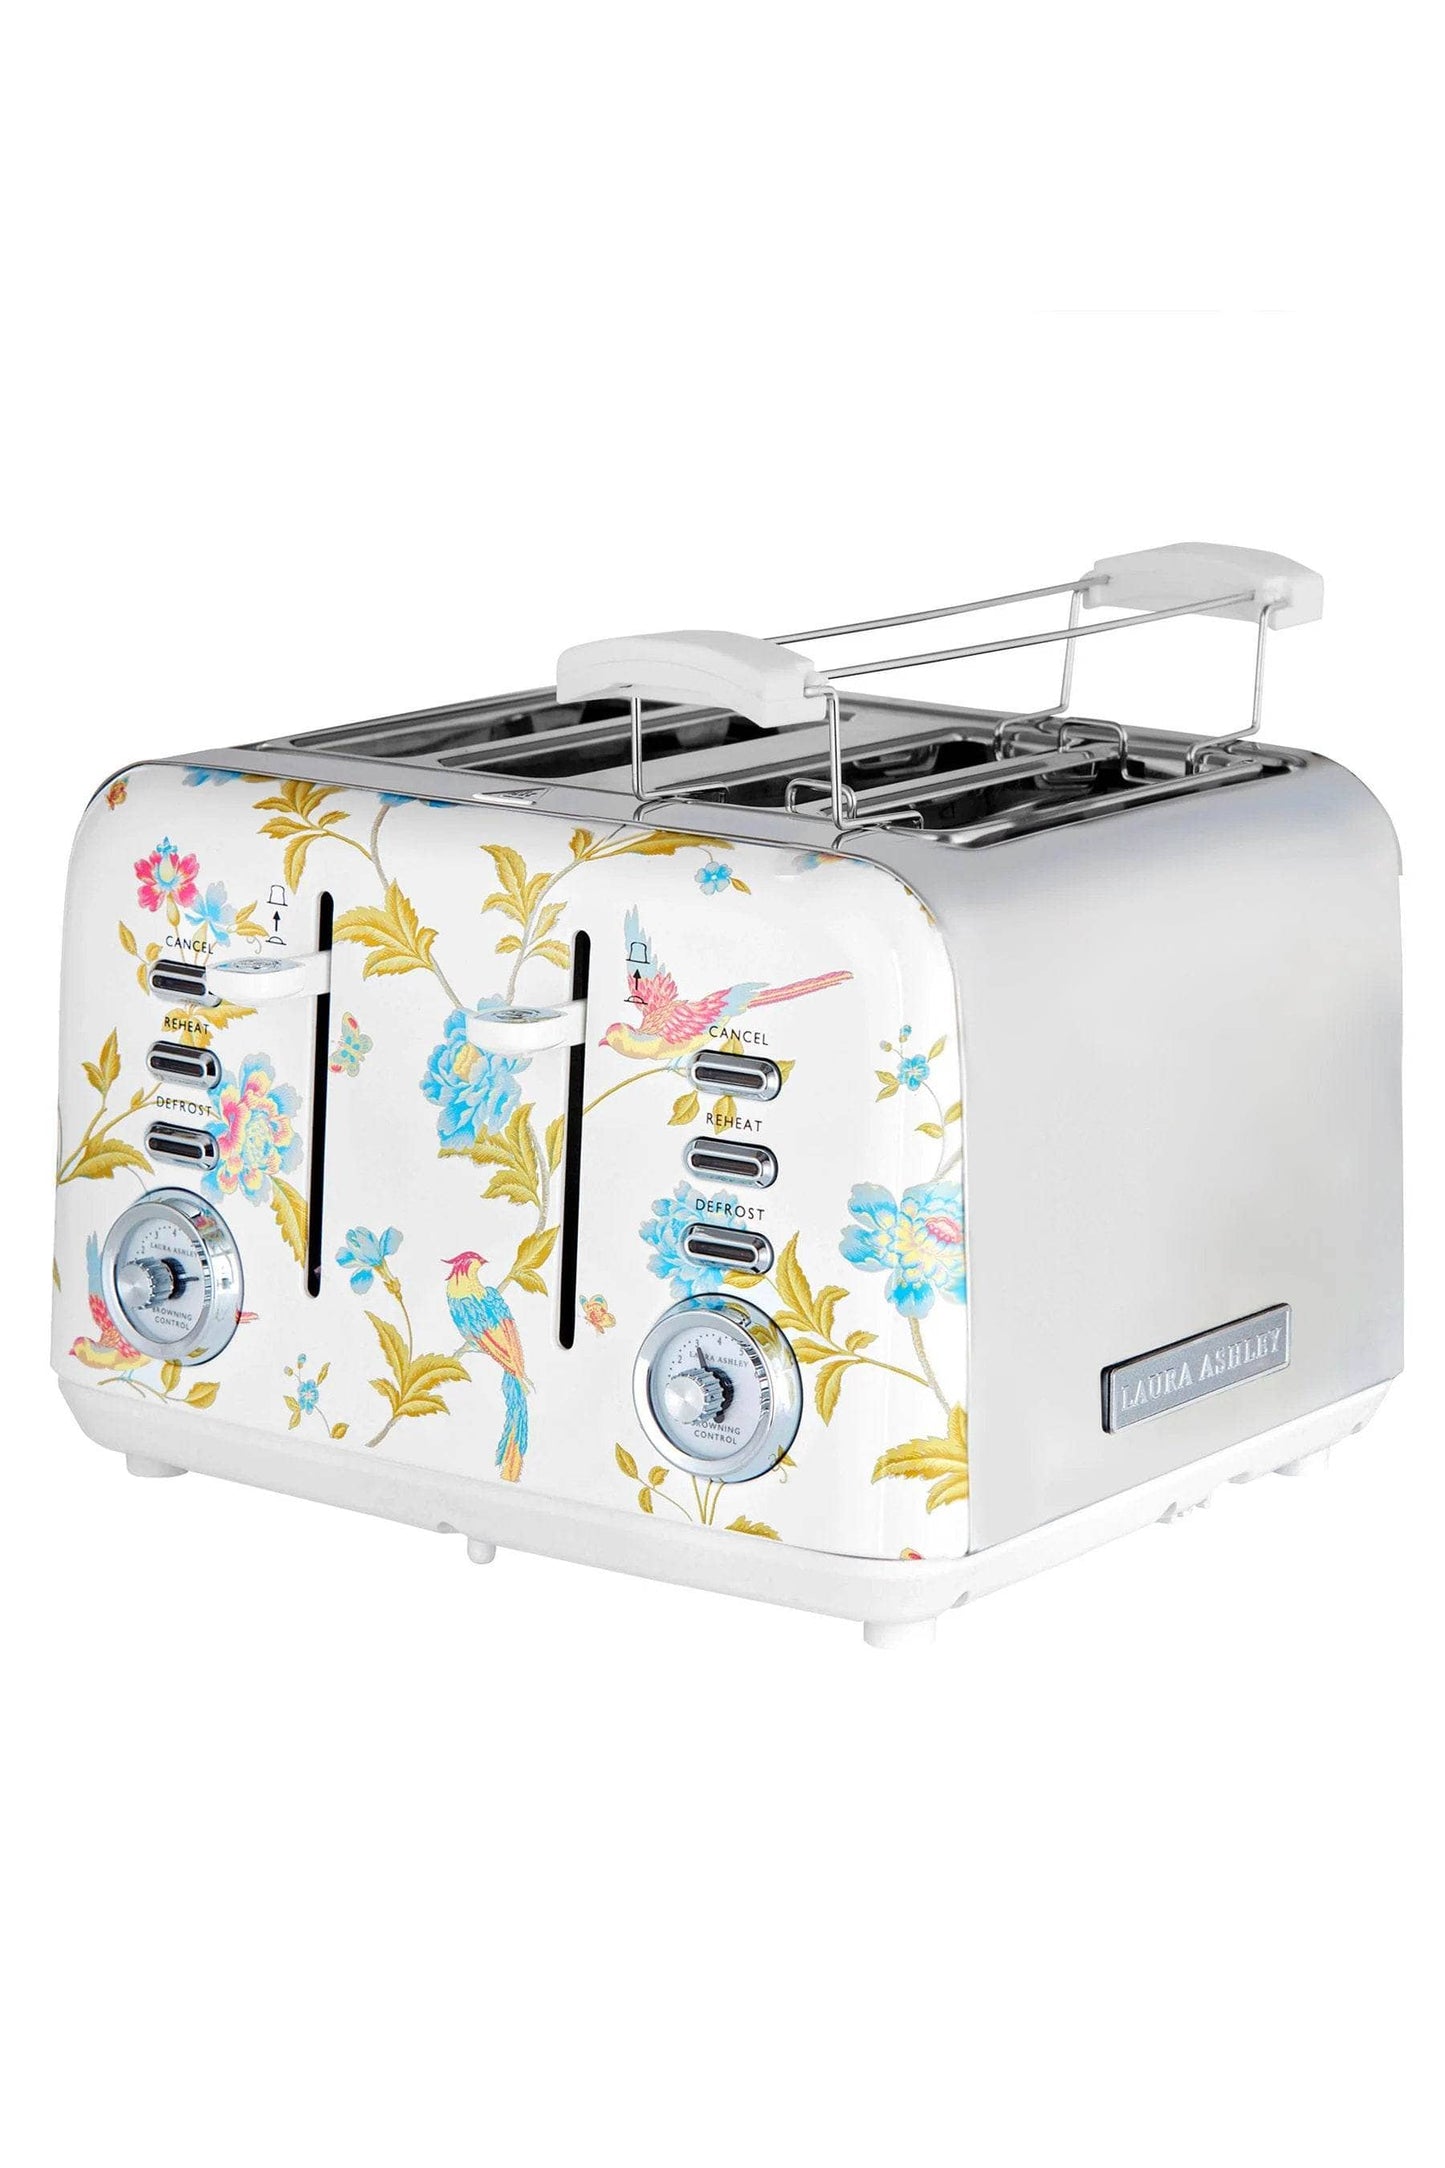 Kitchenware  -  Laura Ashley Elveden 4 Slice Toaster - White  -  60007981